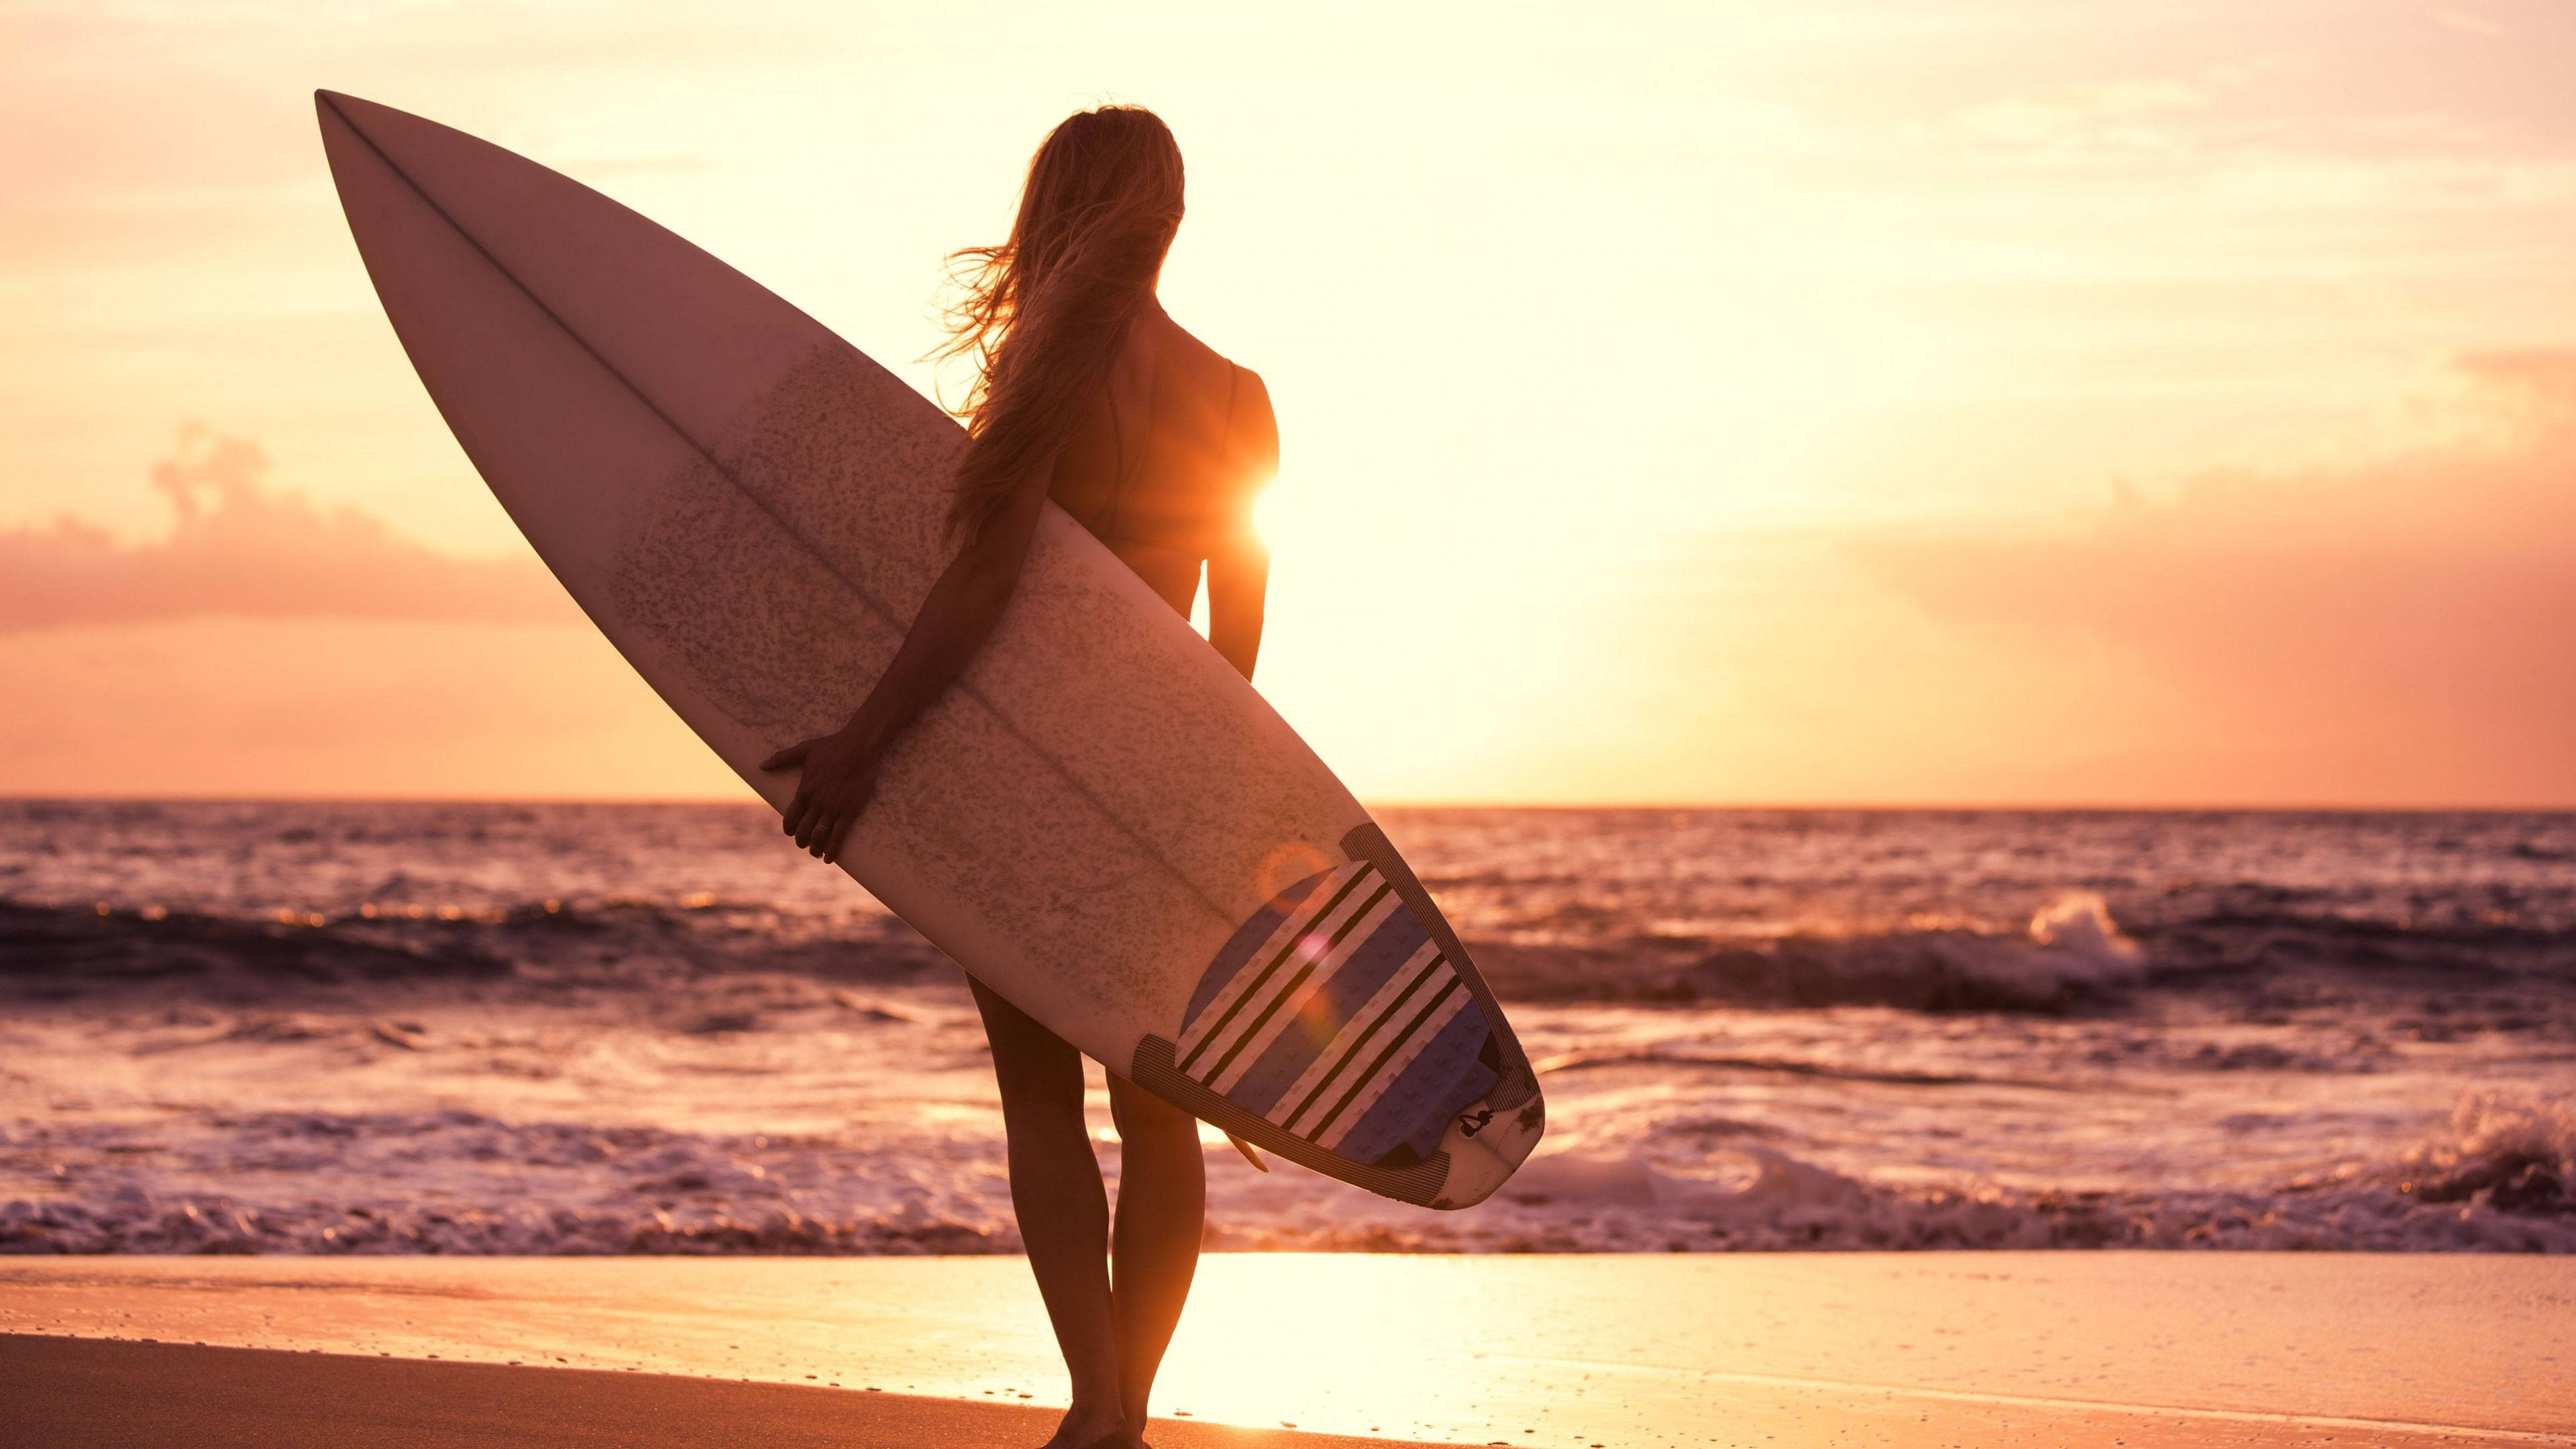 Sunset Beach Girl With Surfboard Wallpaper